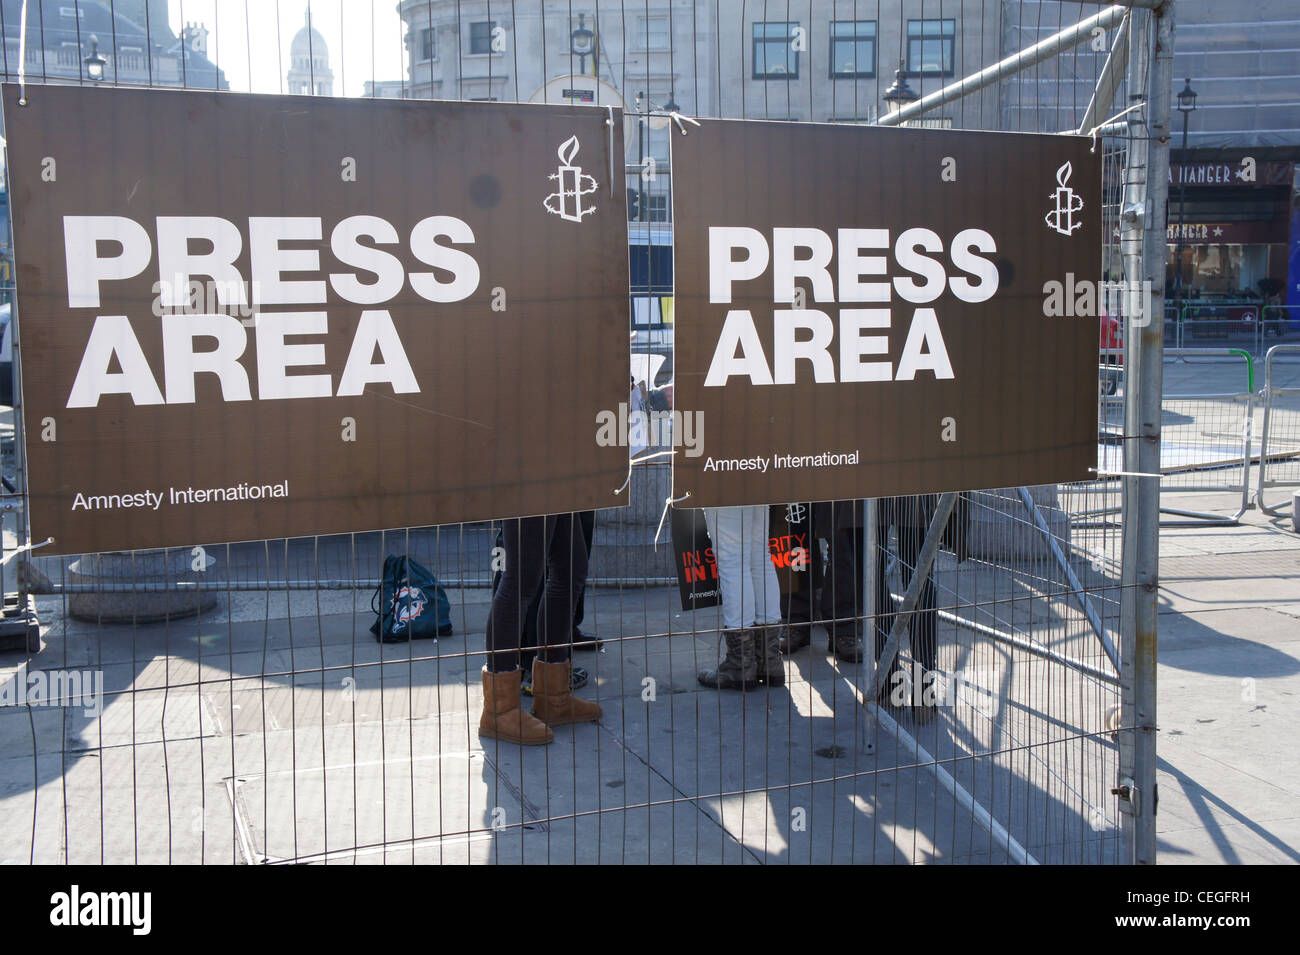 Premere il tasto area in corrispondenza di Amnesty International manifestazione a Londra a sostegno della primavera araba Foto Stock